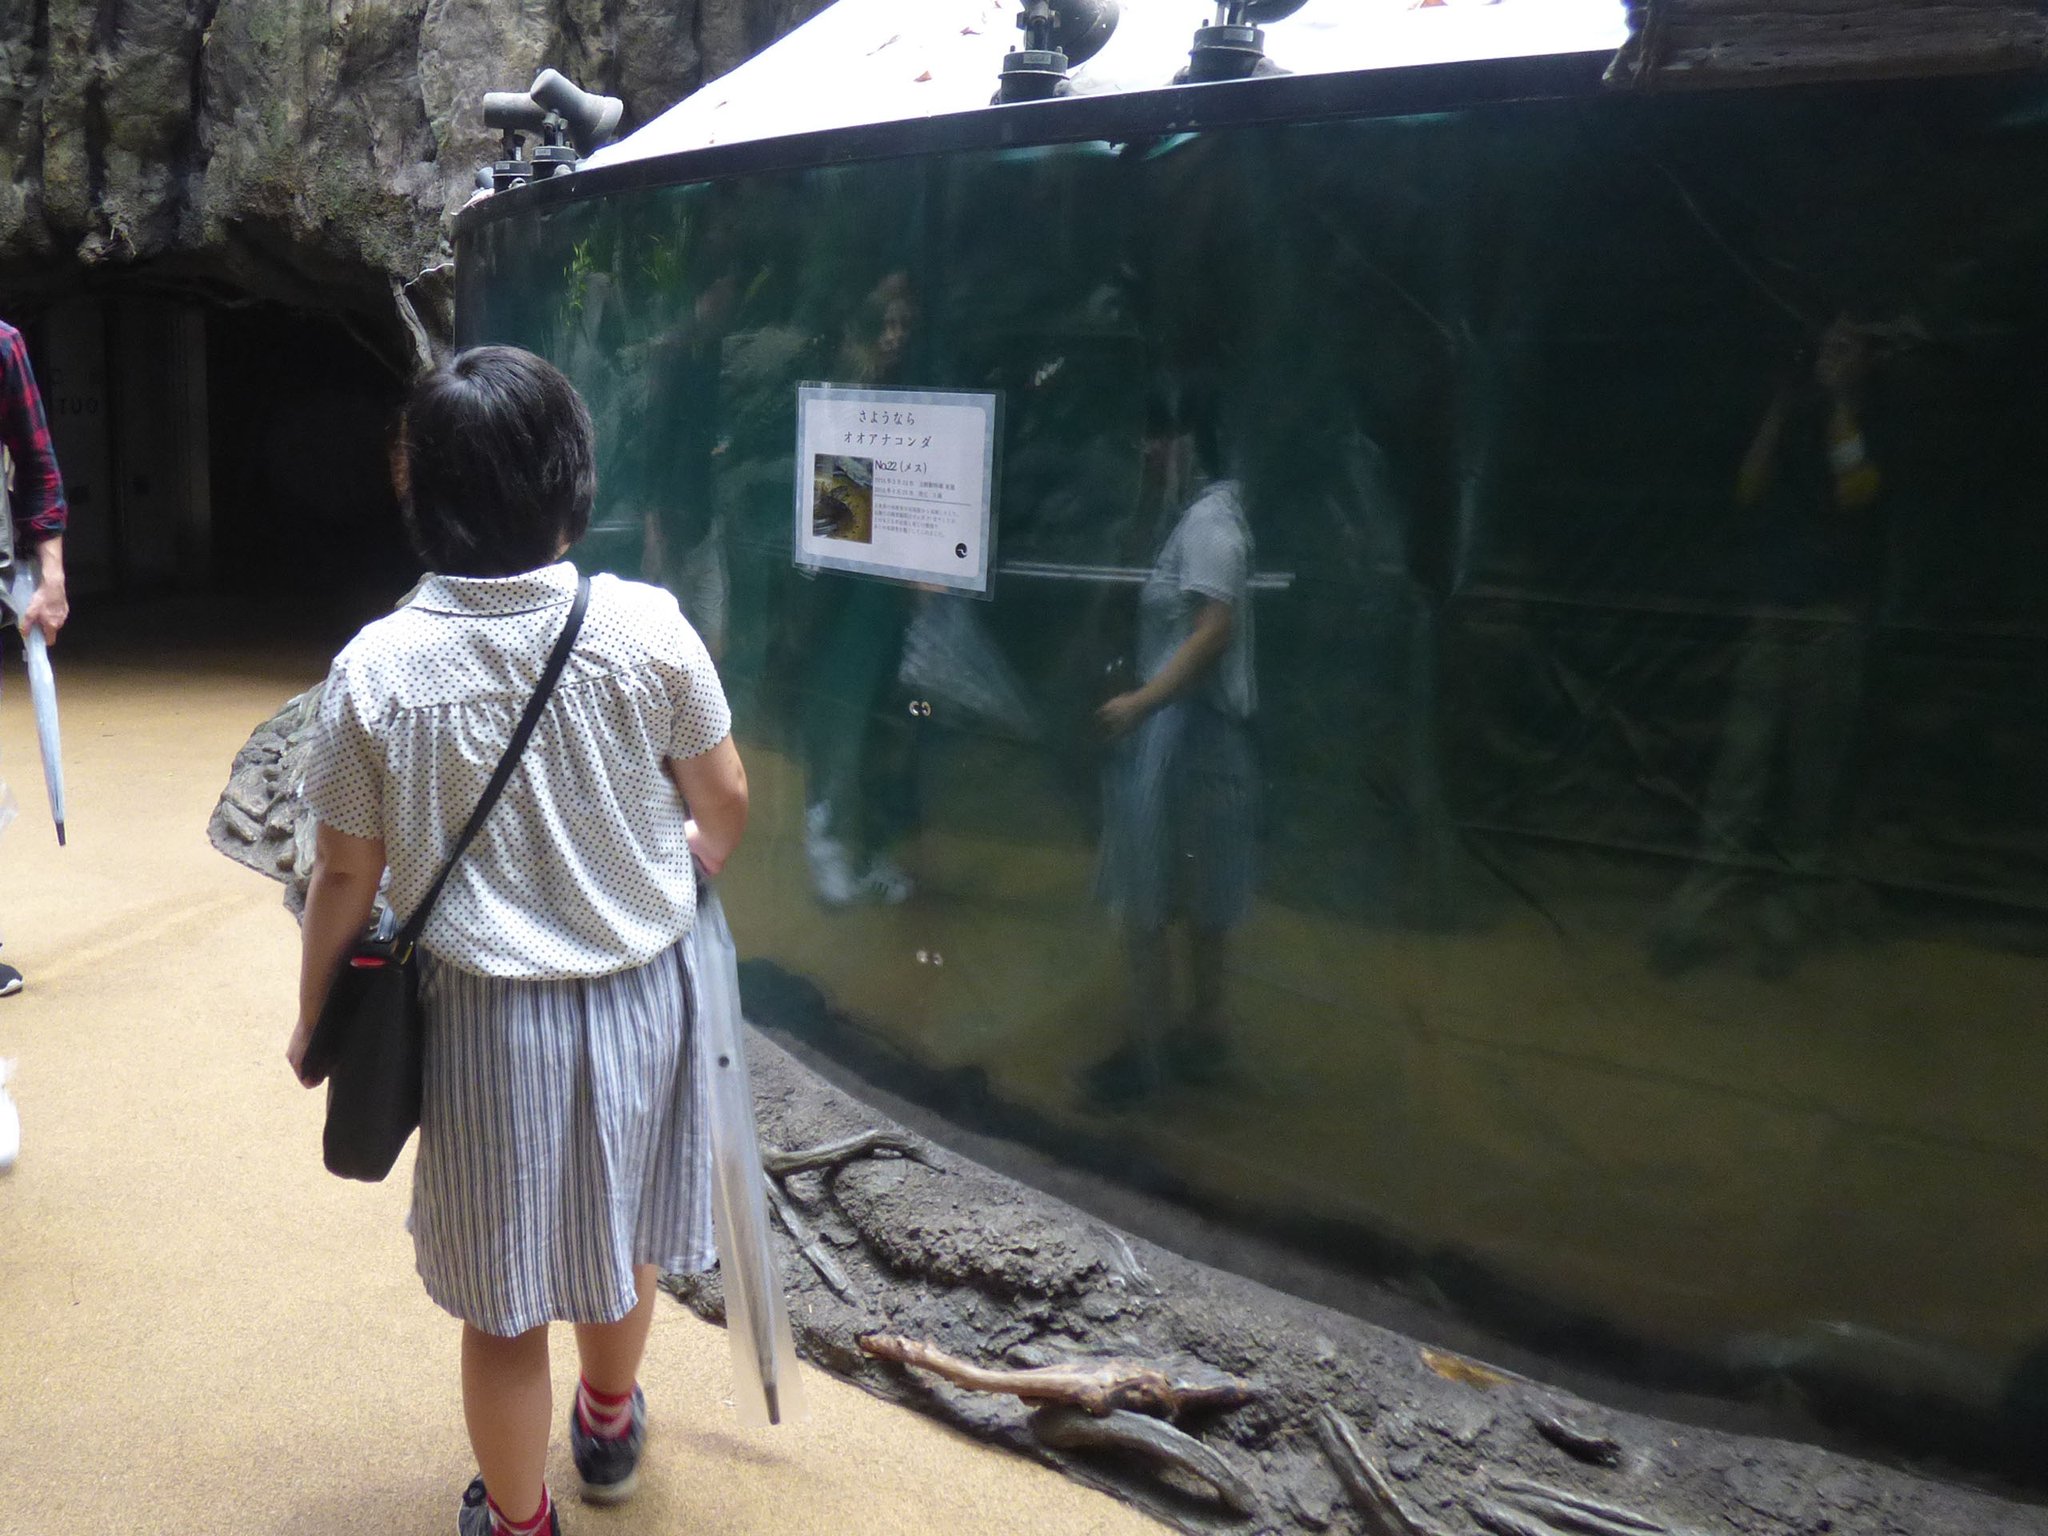 上野動物園 公式 両生爬虫類館でくらしていたオオアナコンダが9月21日に死亡しました その大きな存在感で多くの来園者を楽しませてくれました T Co Xfouzpftaj Twitter